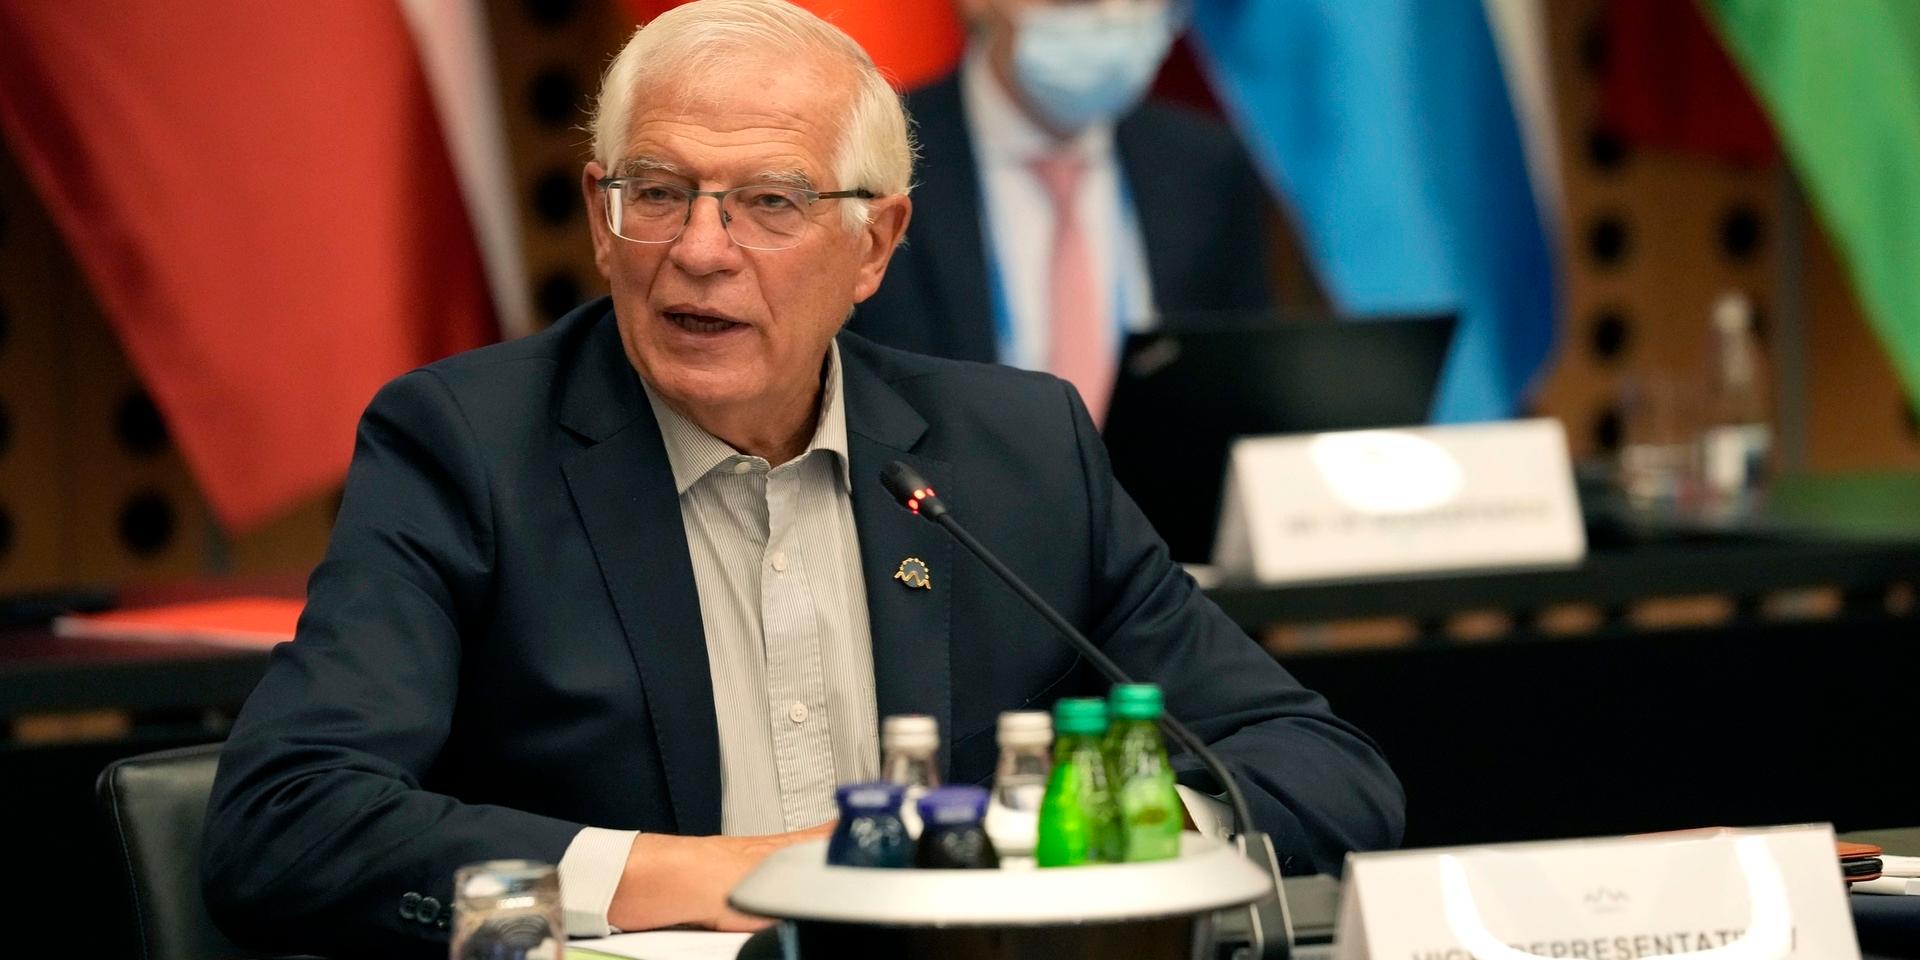 Läget i Afghanistan står i fokus när EU:s utrikeschef Josep Borrell träffar medlemsländernas utrikesministrar vid ett informellt ministermöte i Brdo i Slovenien.